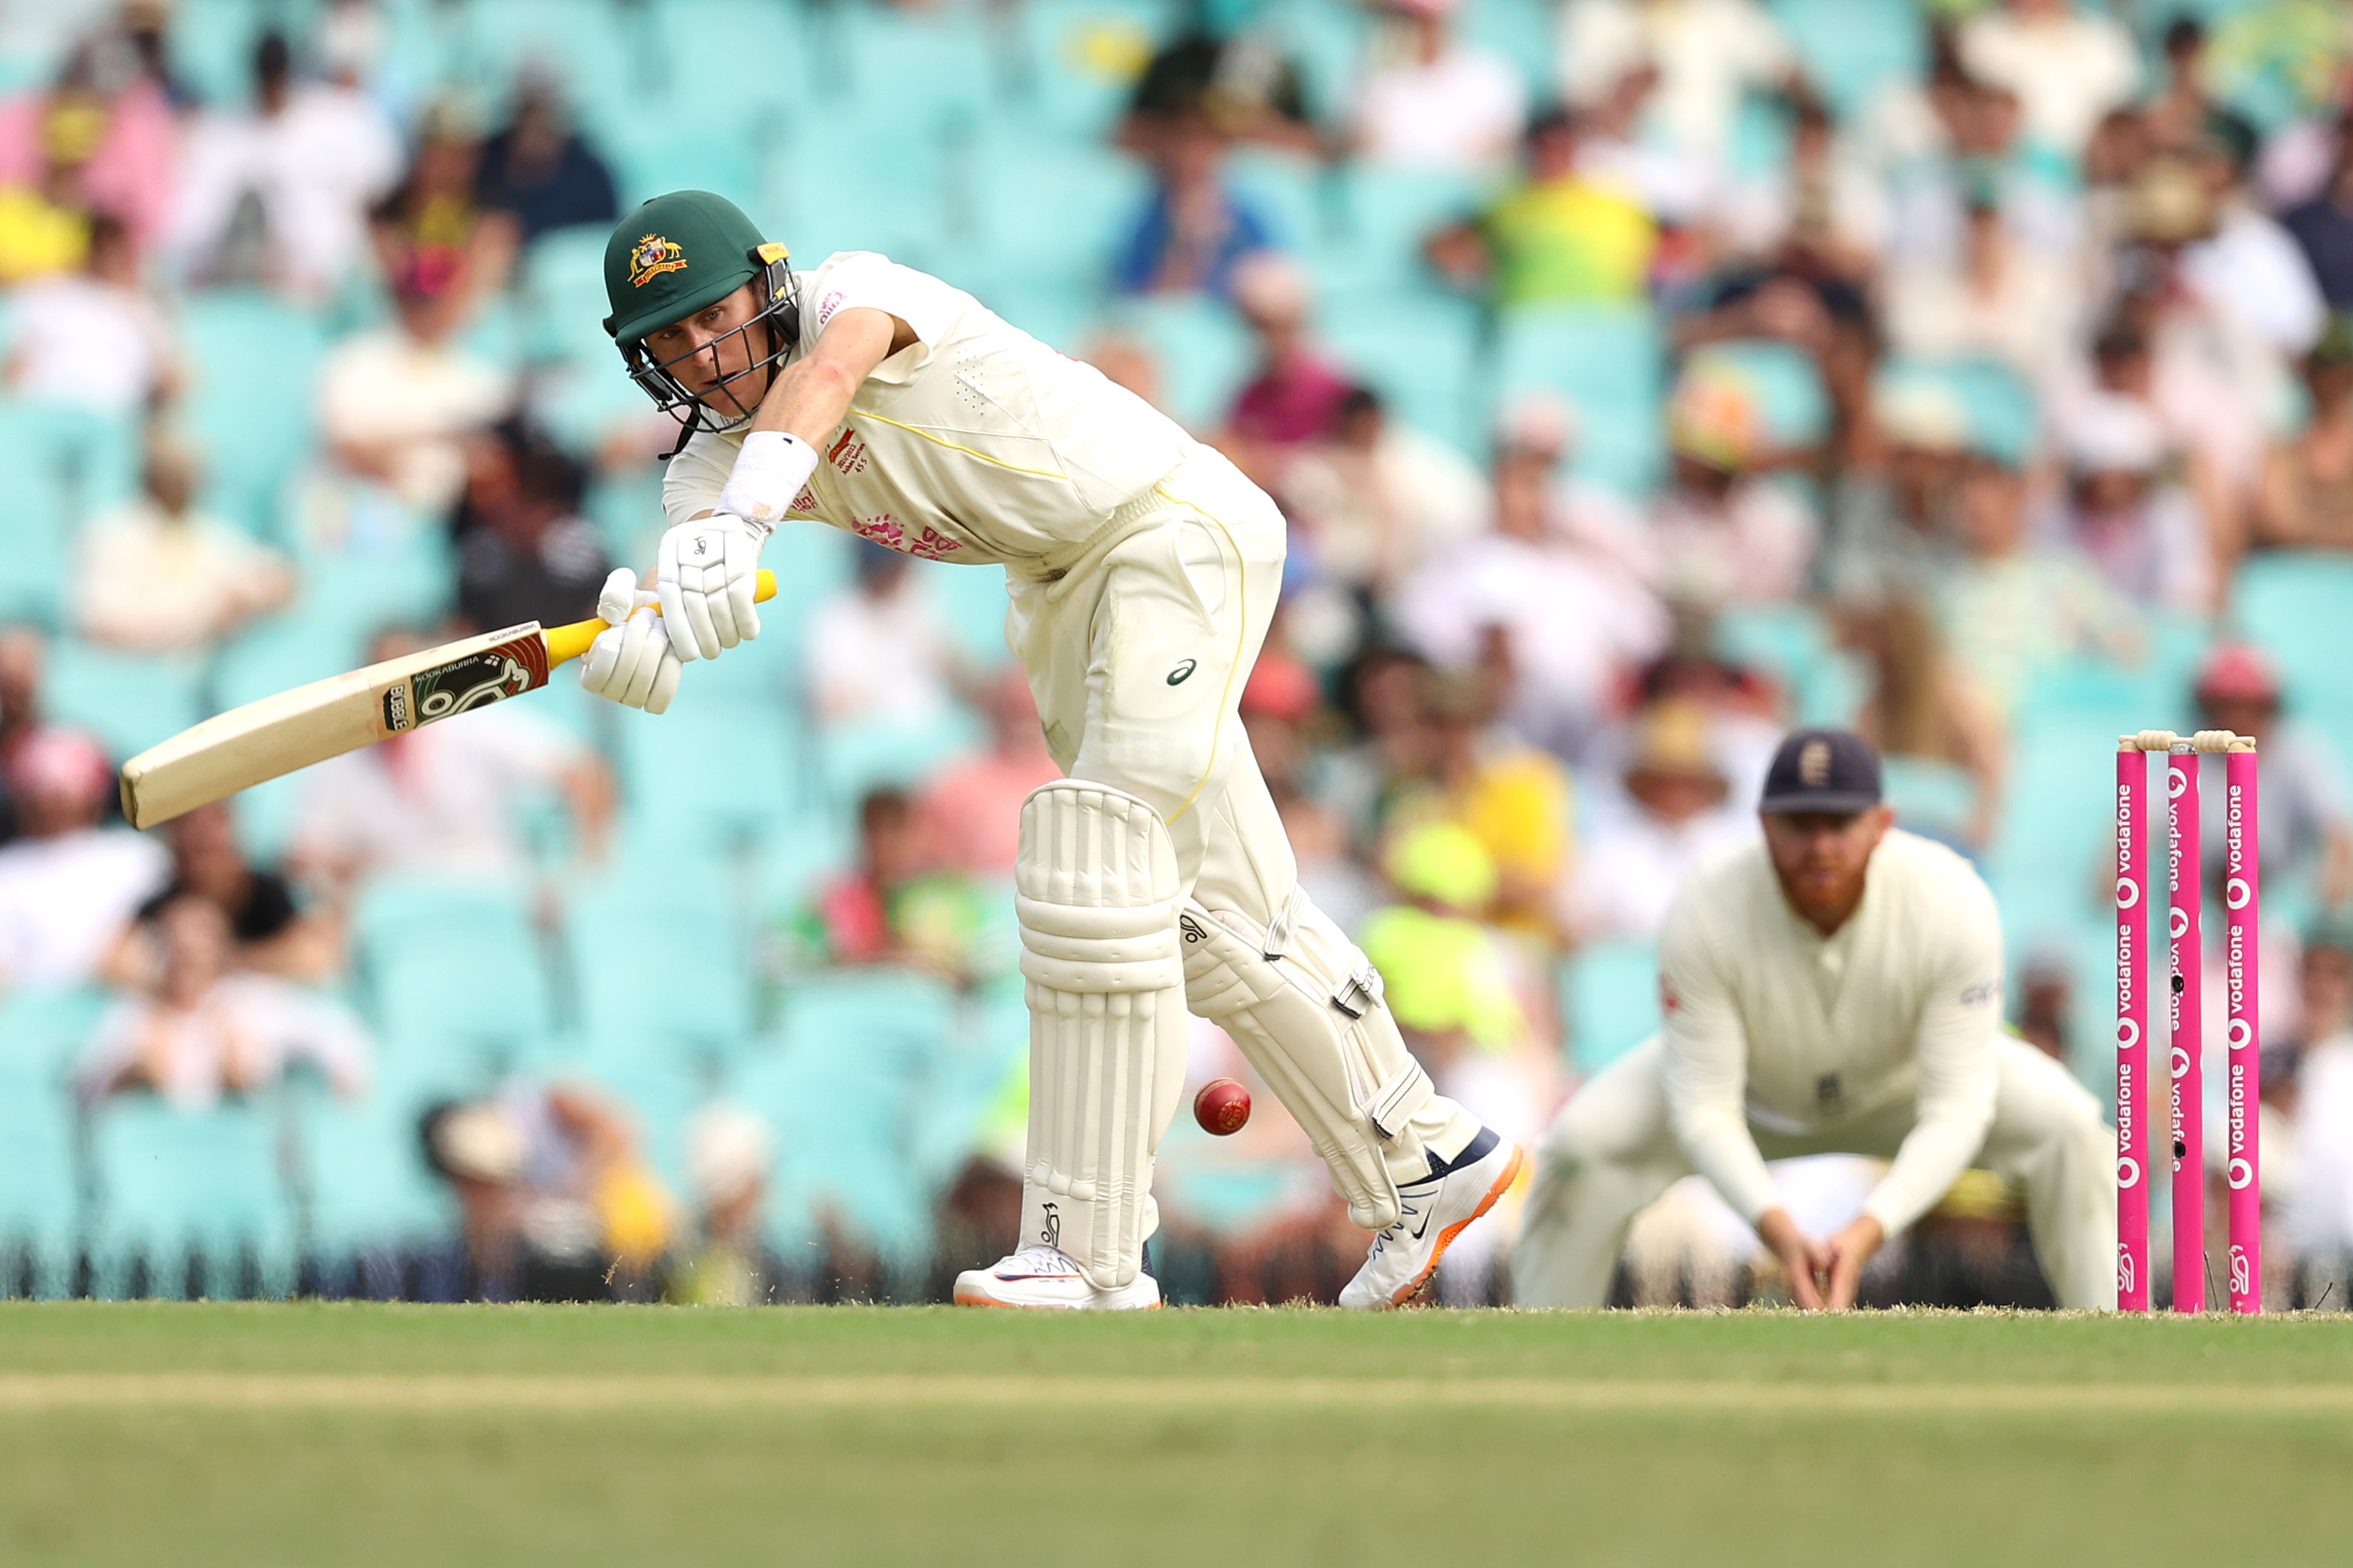 India vs Australia, Australia scorecard, Australia score in 4th Ashes test, Australia innings